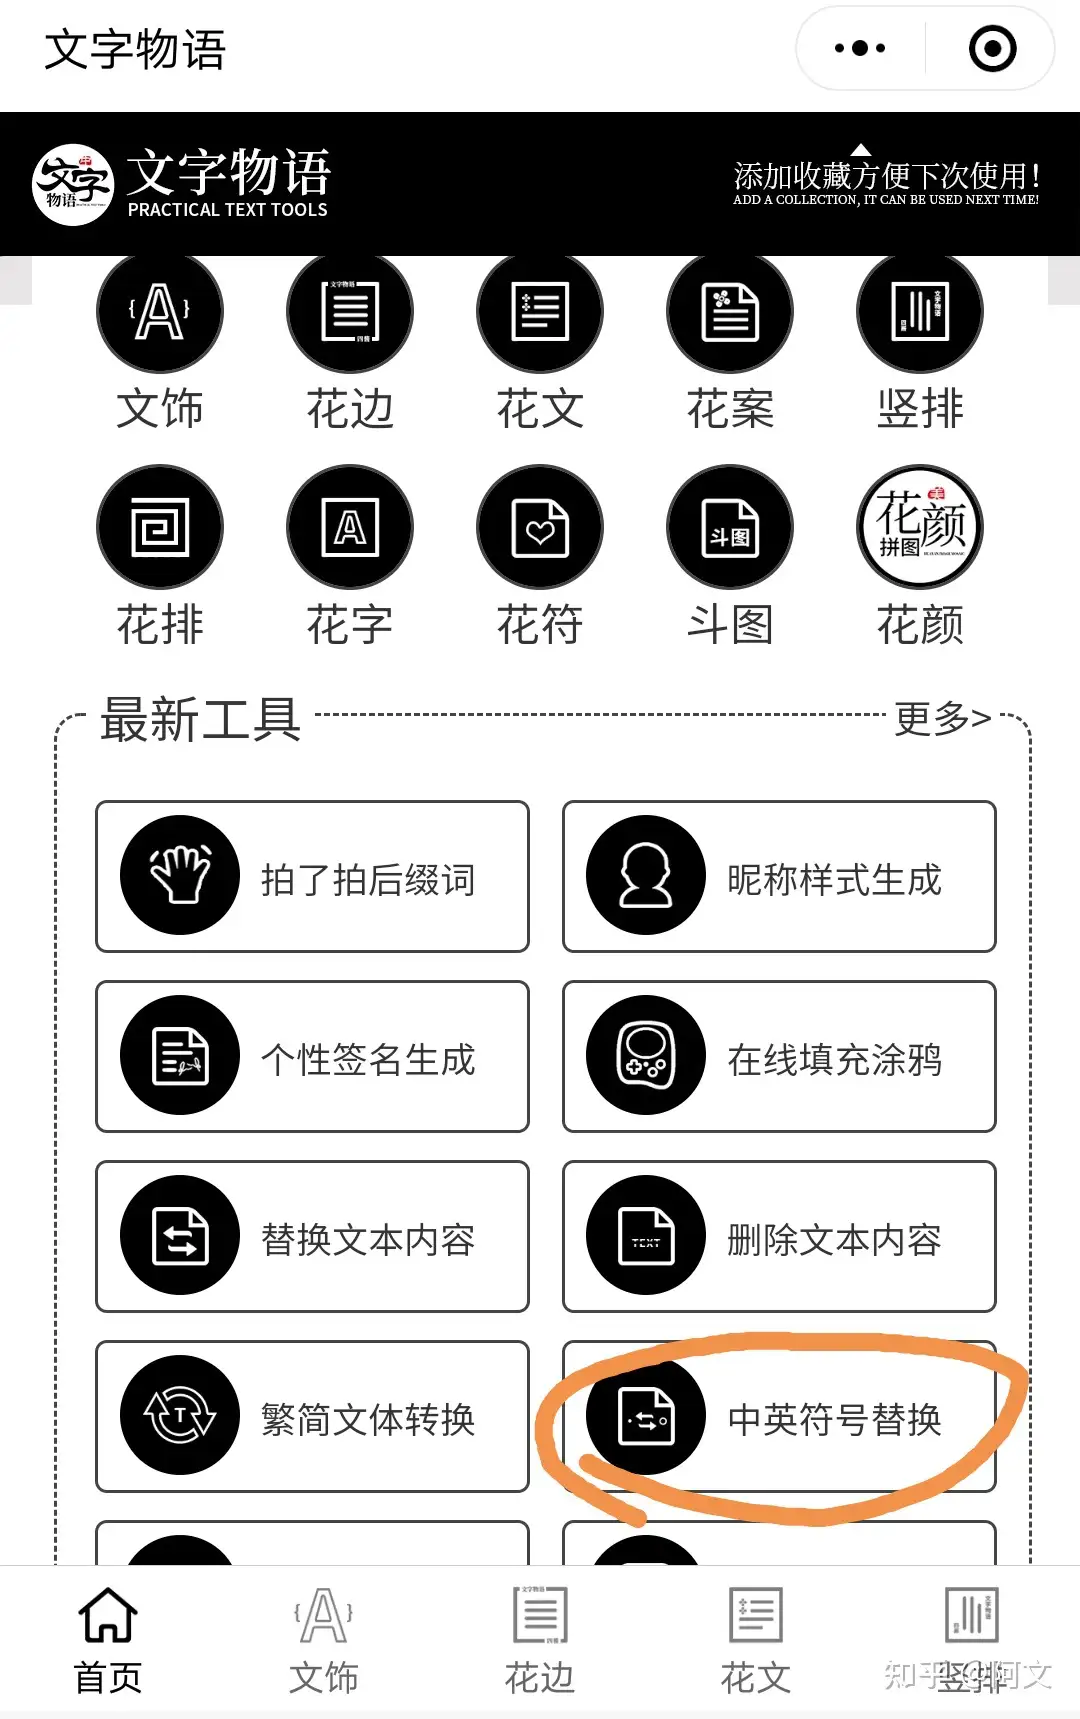 手机里的文字内容如何把英文符号全部改成中文的？ - 知乎 image